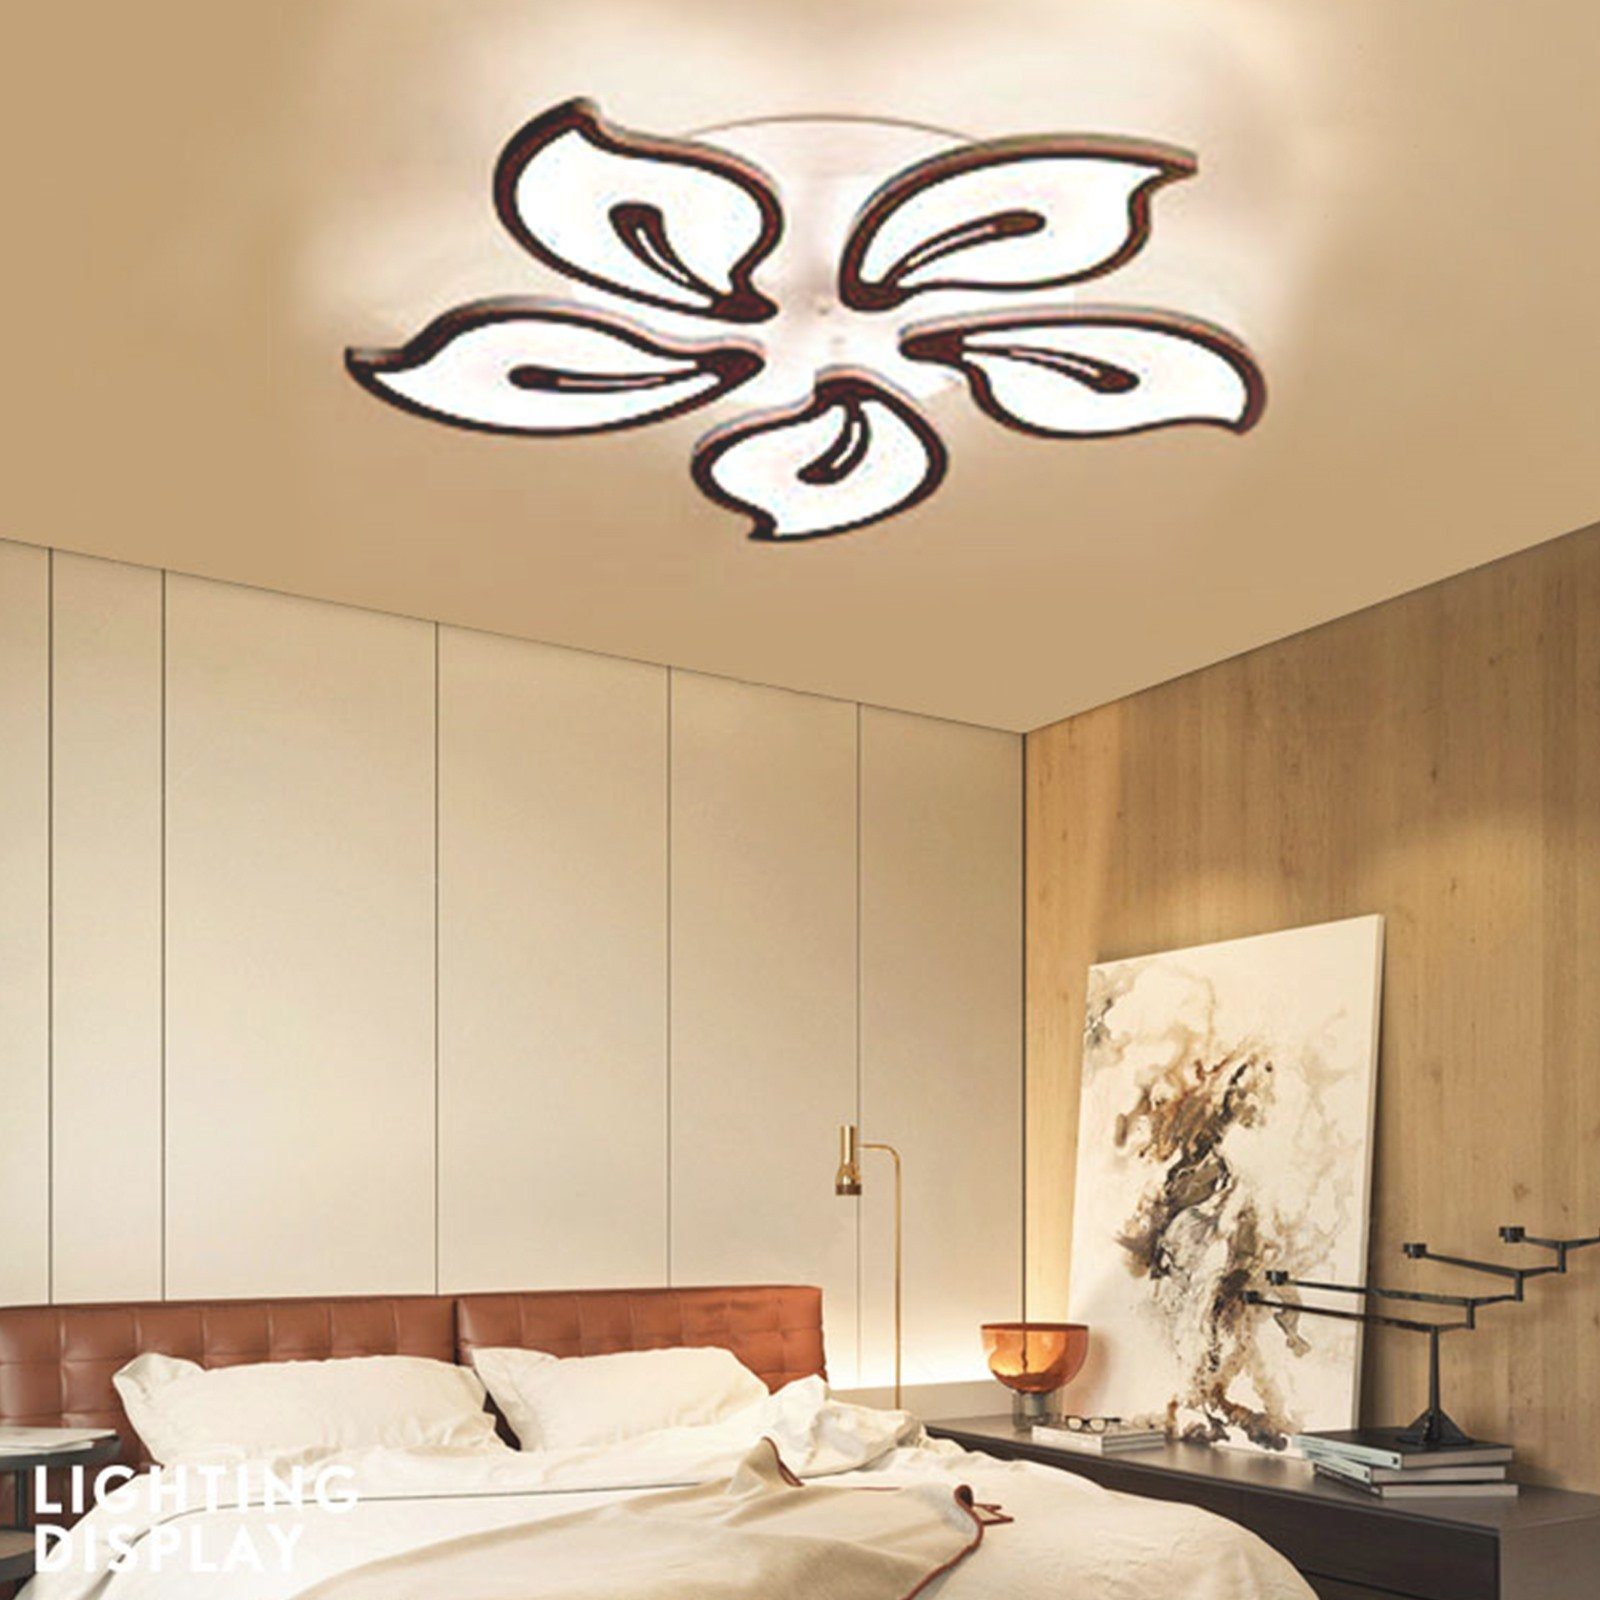 Daskoo Deckenleuchten Blumenart LED Schwarz LED mit Warmweiß/Neutralweiß/Kaltweiß, Deckenleuchte Deckenlampe LED integriert, fest Wohnzimmer Dimmbar, Fernbedienung